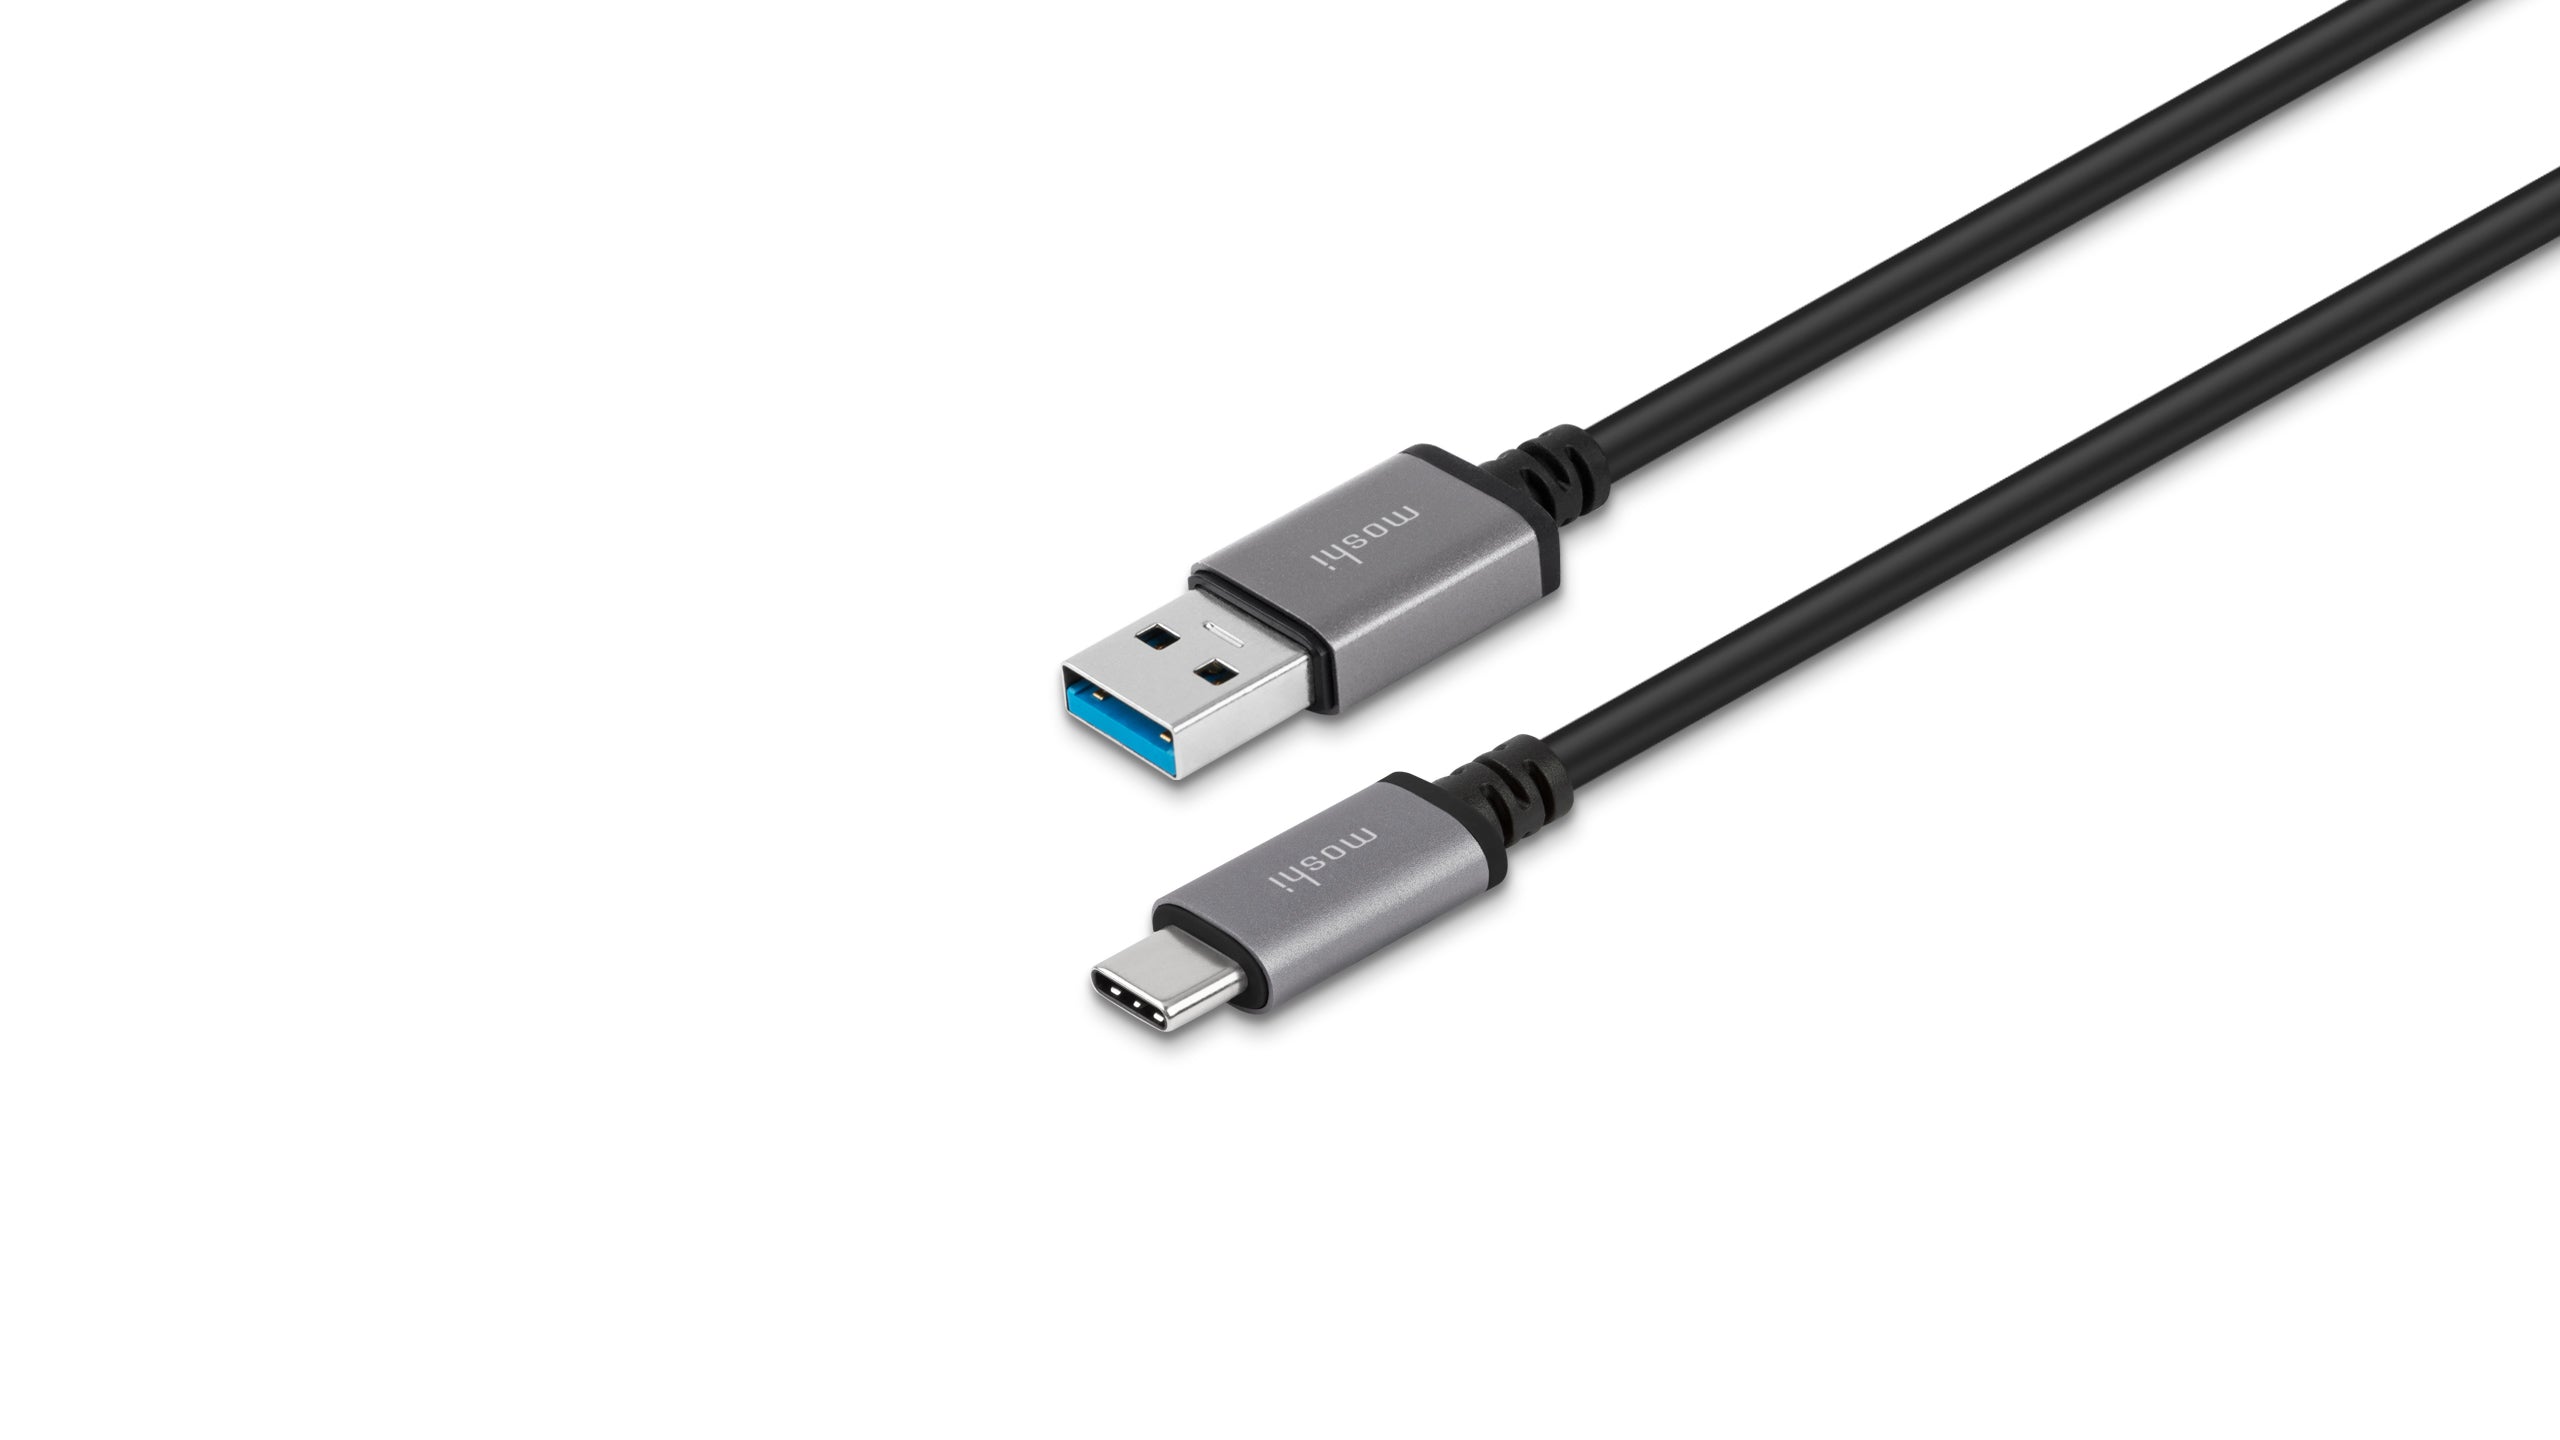 Moshi USB-C to USB Cable